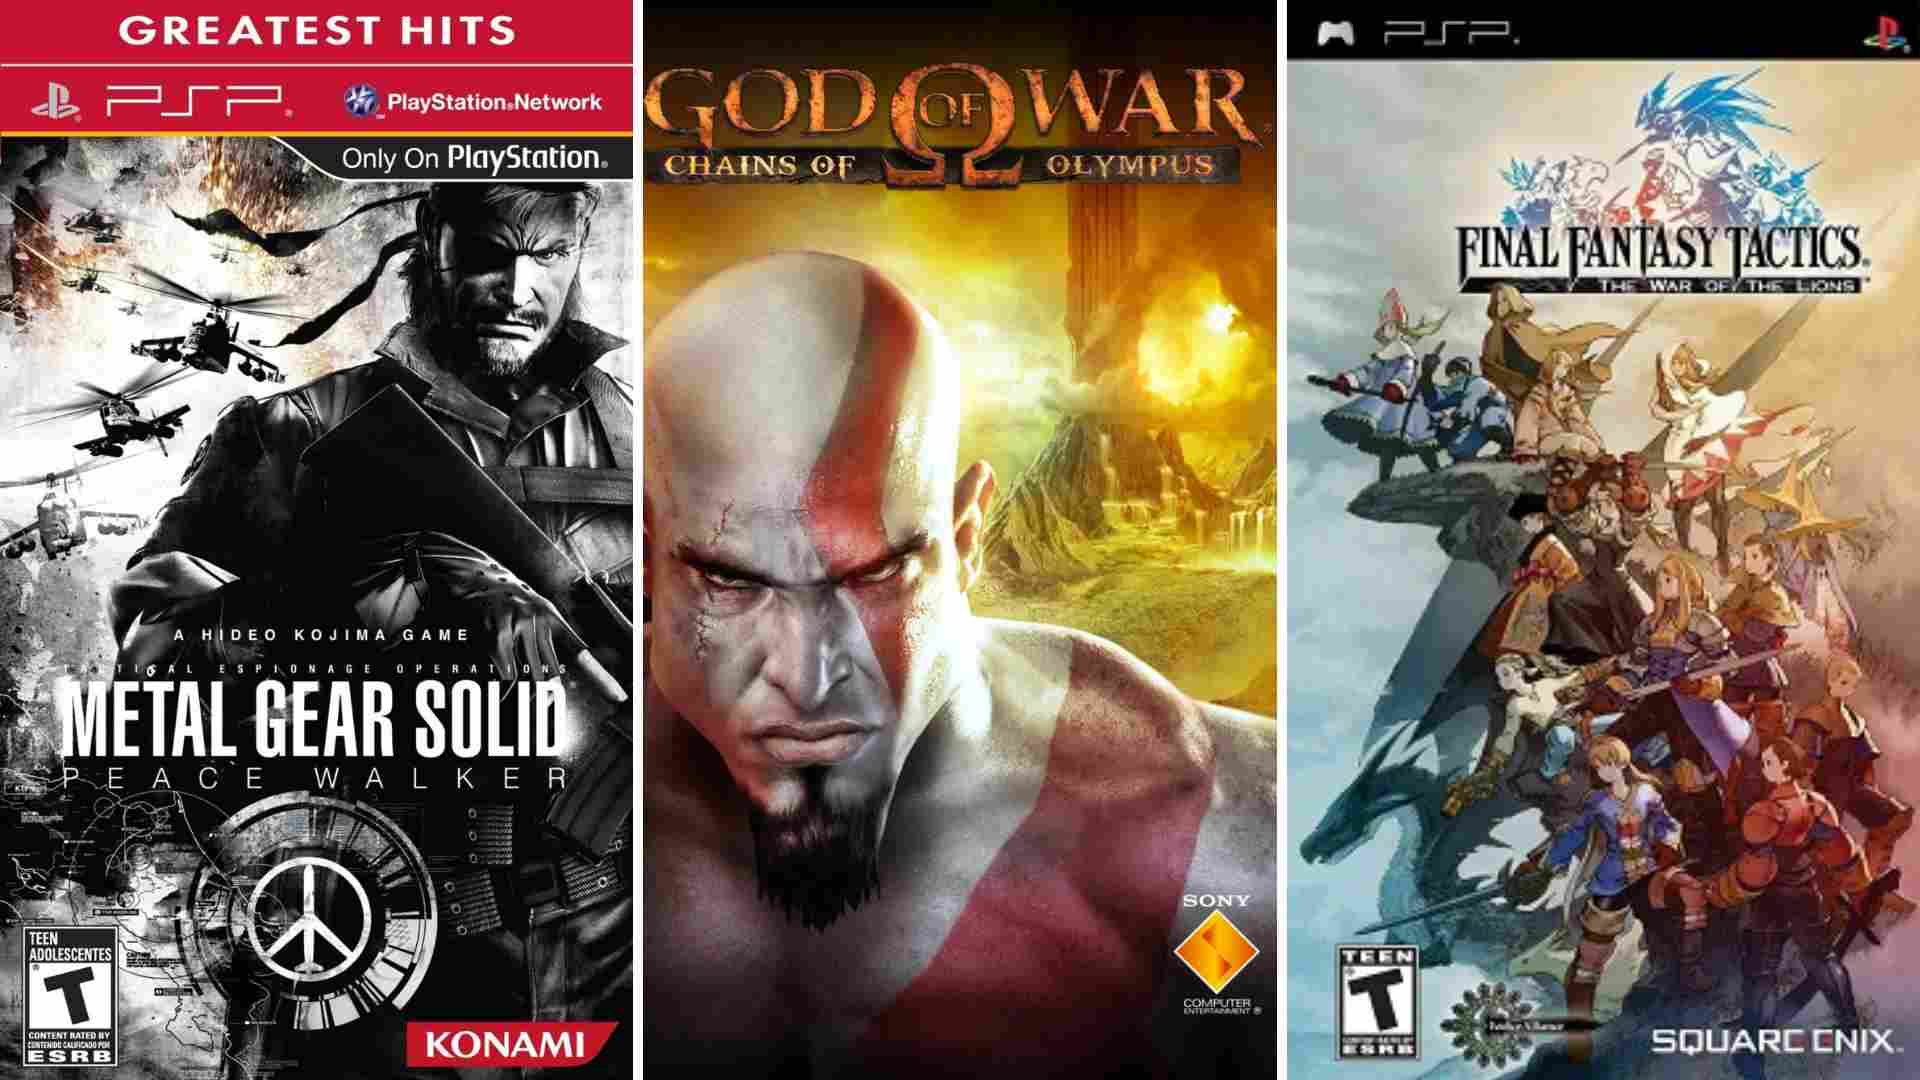 foto de juegos de psp con Metal Gear Solid: Peace Walker, God of War y Final Fantasy